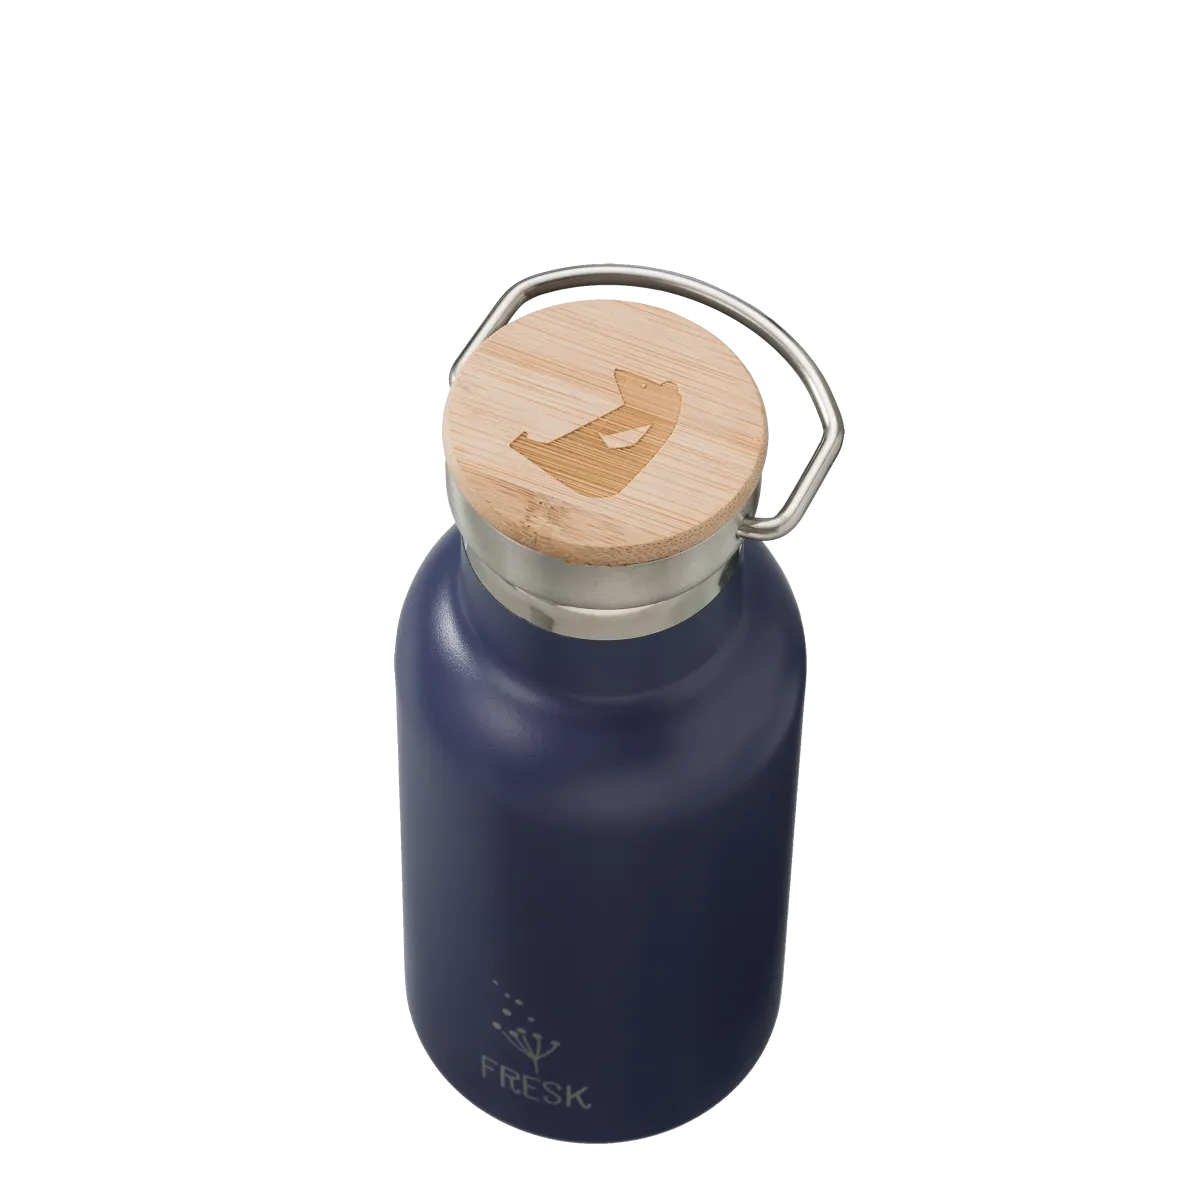 FRESK termofľaša Nordic UNI Nightshadow Blue, 350 ml 1×1 ks, termofľaša